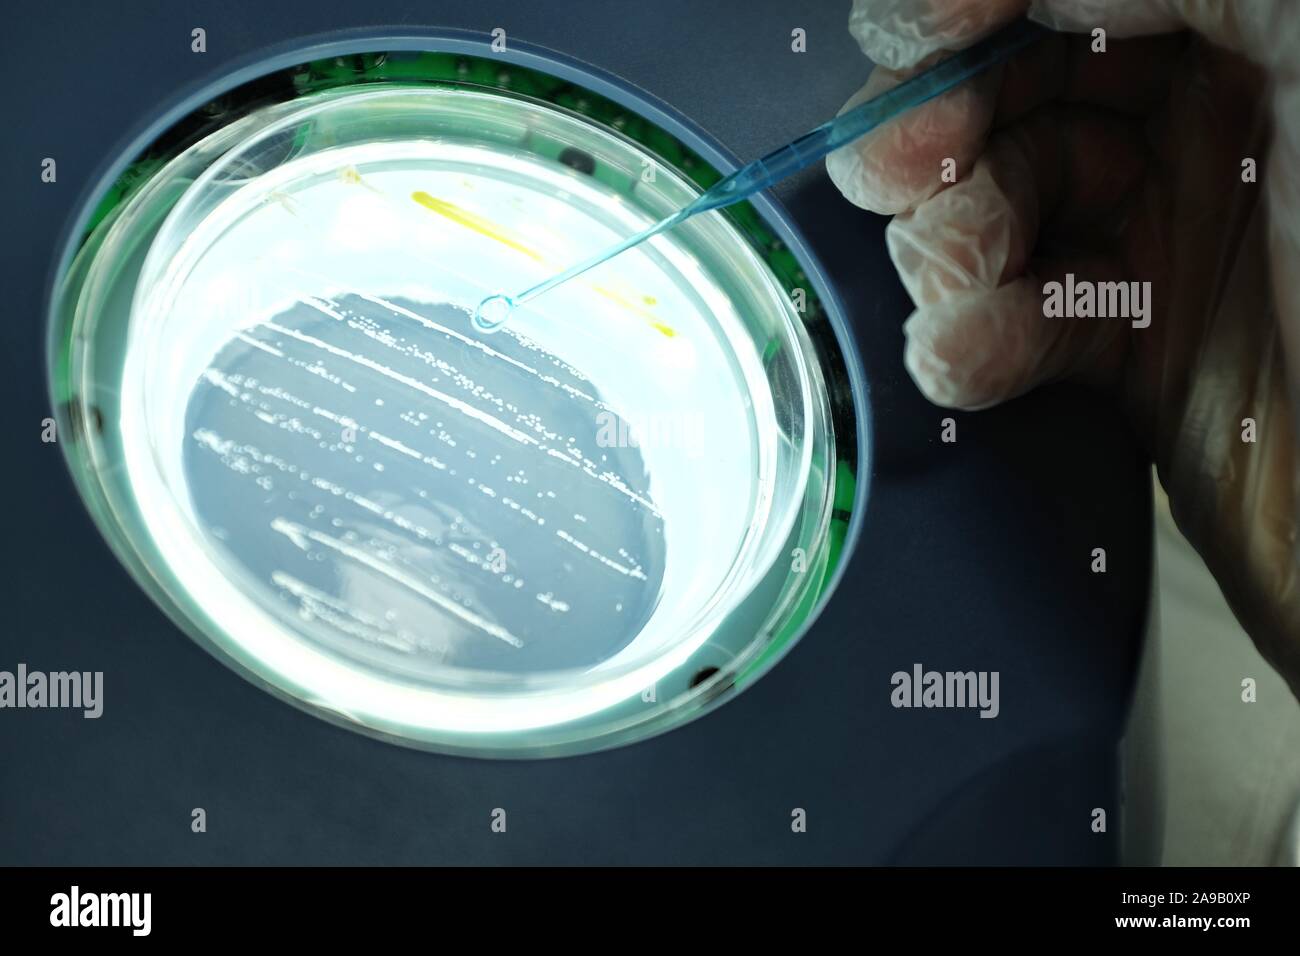 Las bacterias en la superficie de agar. Foto de stock